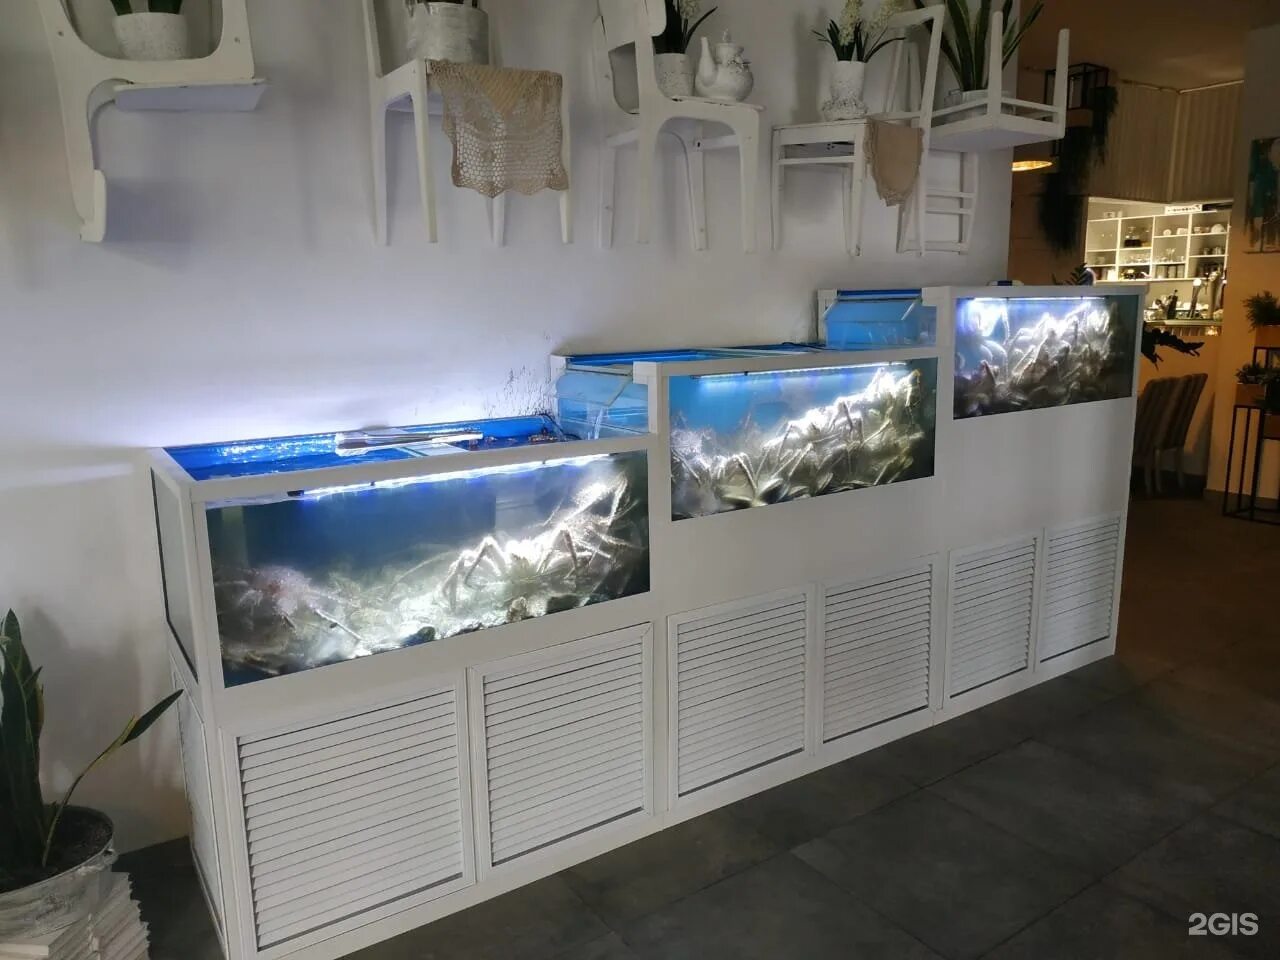 Аквариус панели аквариум. Vladivostok akvarium аквариум. Подводная лаборатория Аквариус. Аквариум для морепродуктов.